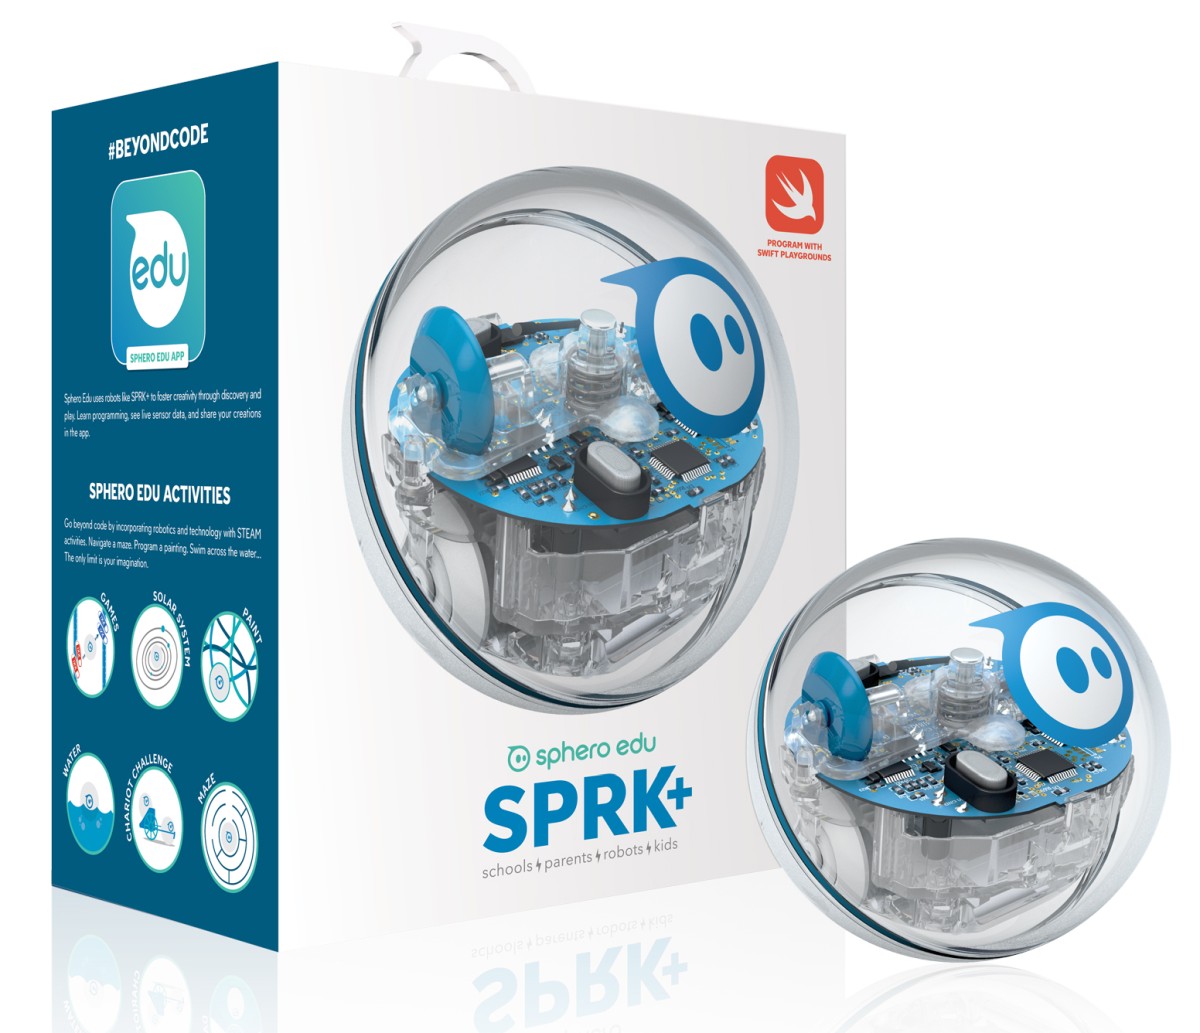 Robot educativo SPRK+ di Sphero